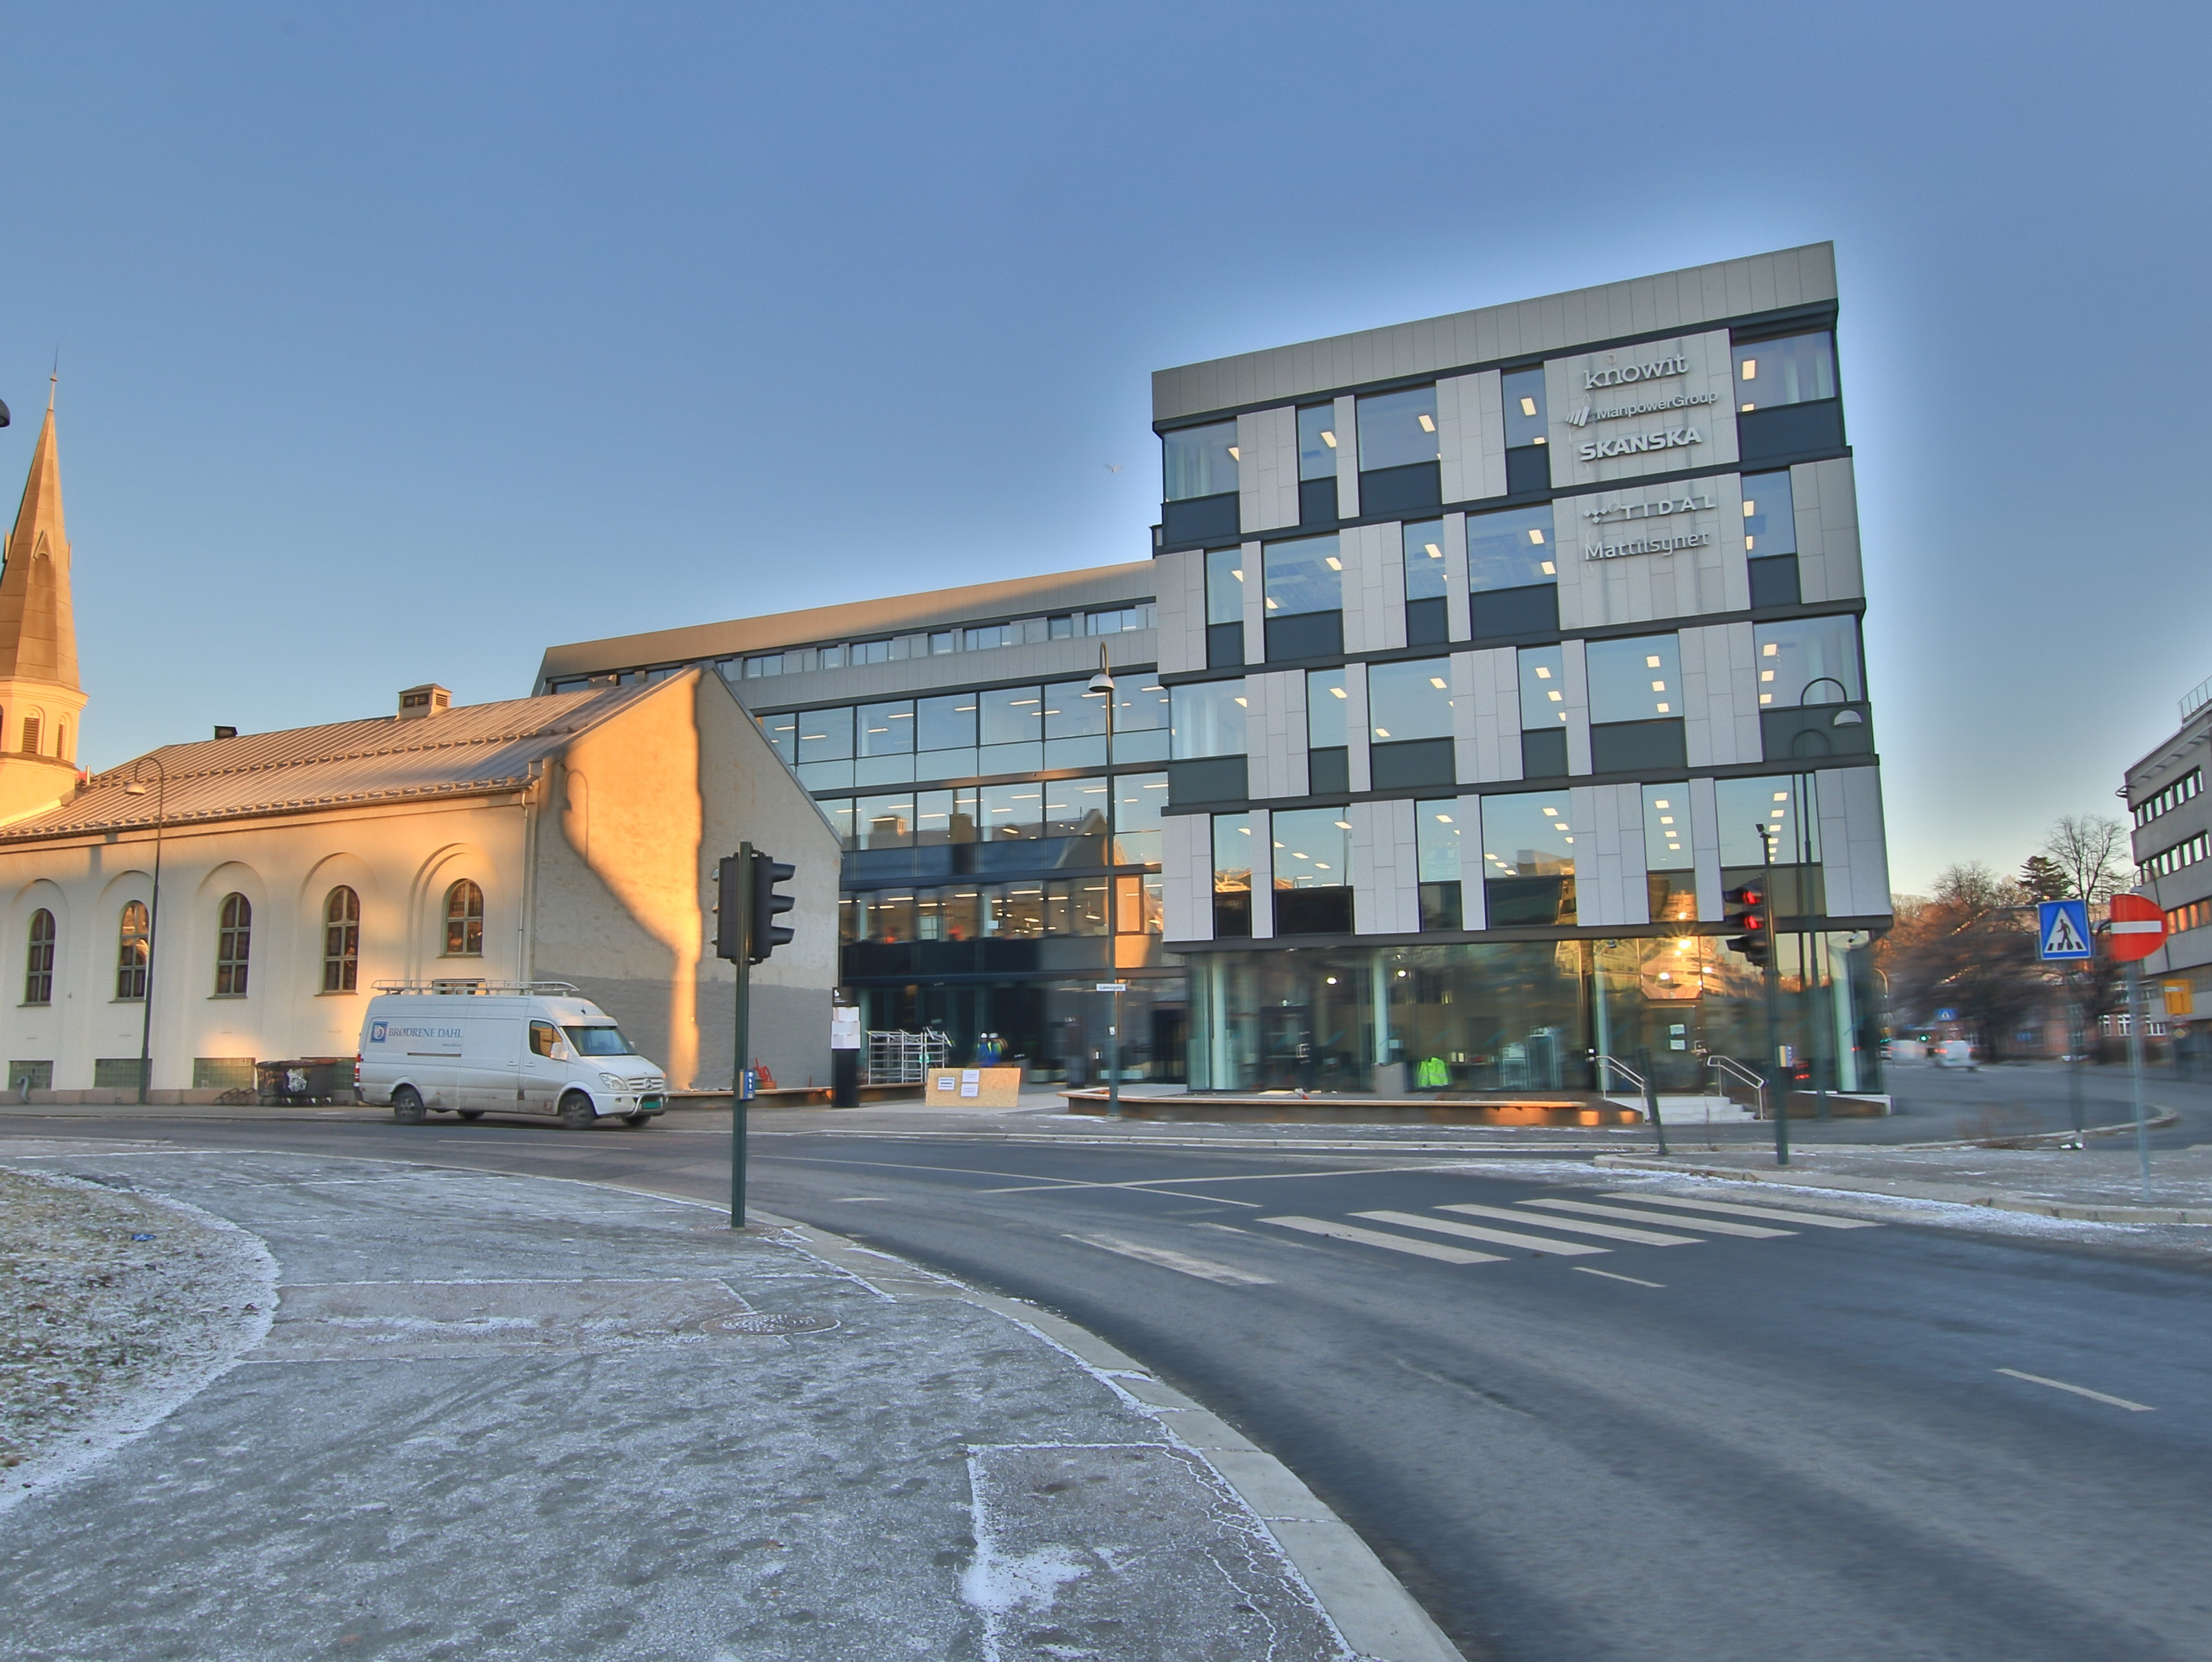 Sundtkvartalet in Oslo, Norway